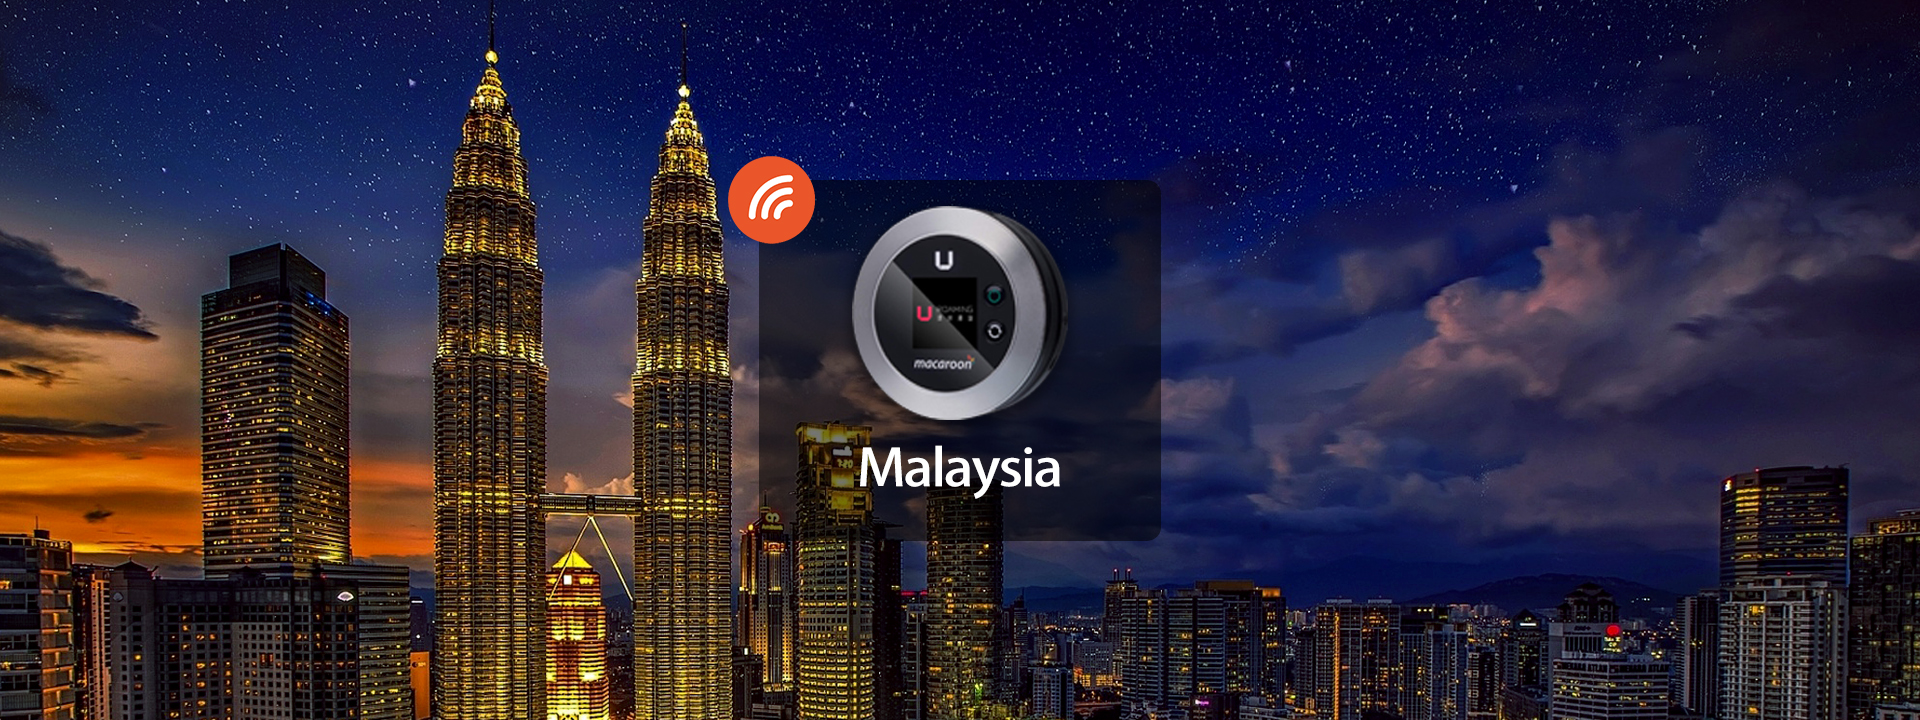 馬來西亞4G WiFi分享器 由Uroaming提供 香港機場領取